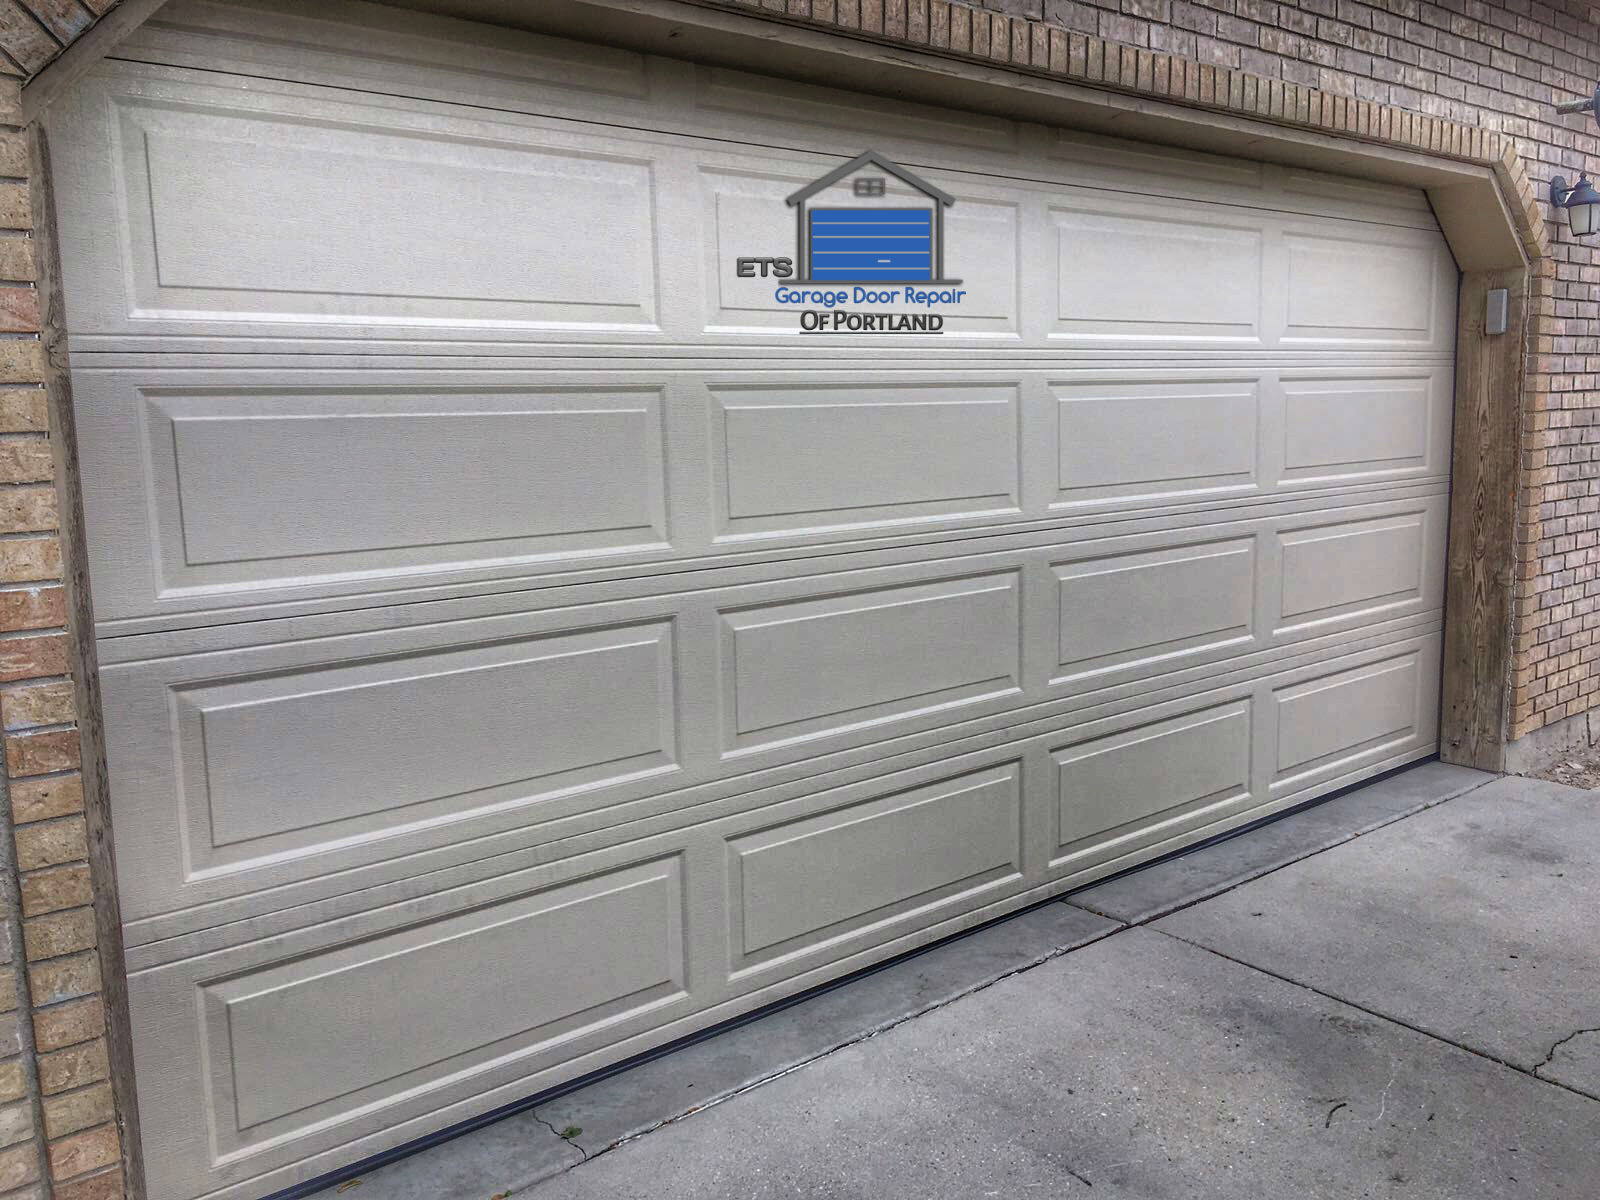 ETS Garage Door Repair Of Sherwood - Garage Door Repair & Installation Services18